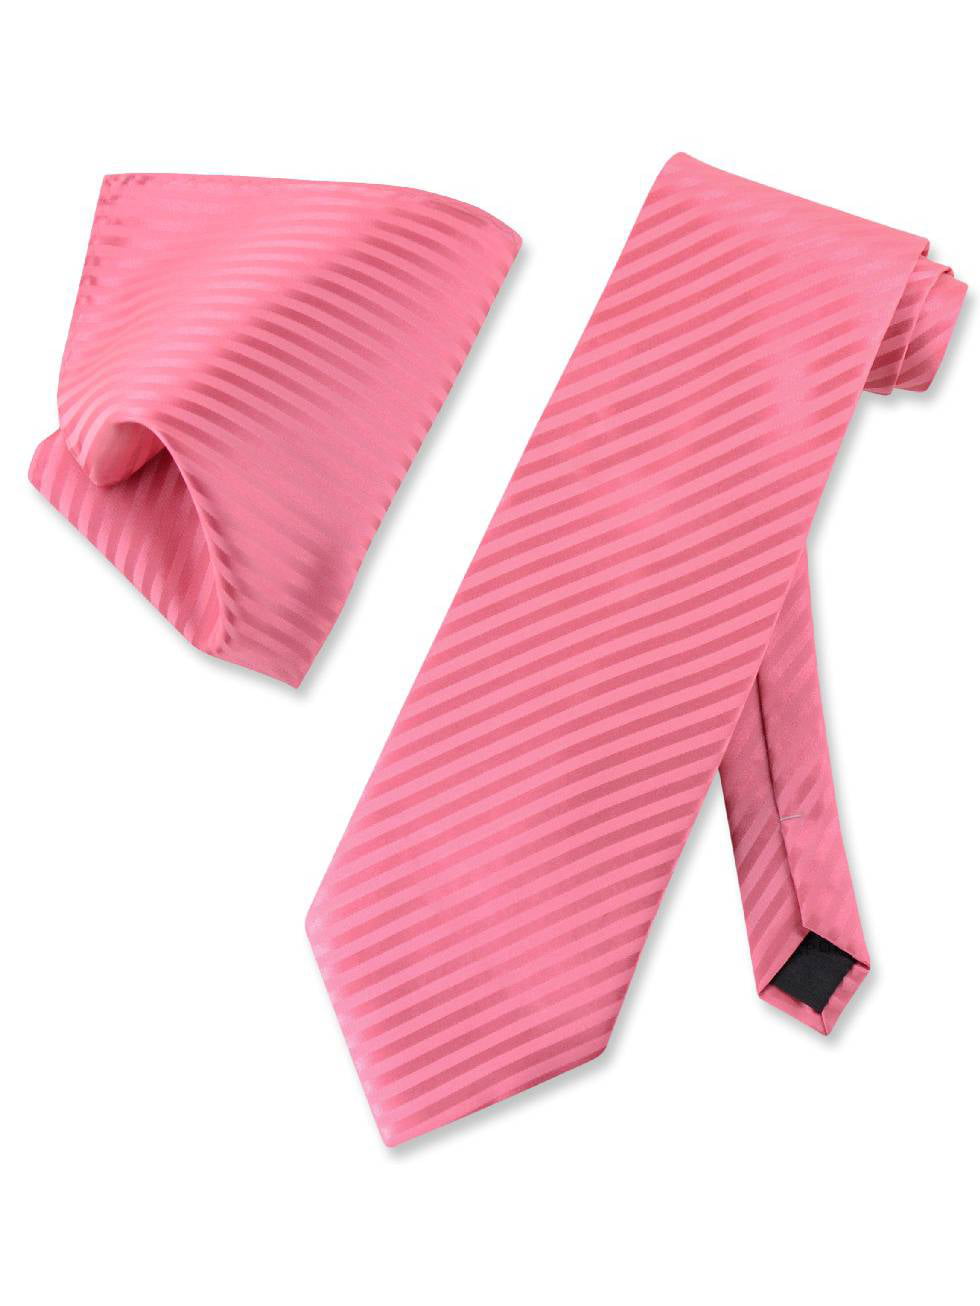 New Vesuvio Napoli Polyester Woven Men's Neck Tie necktie Stripes prom Purple 